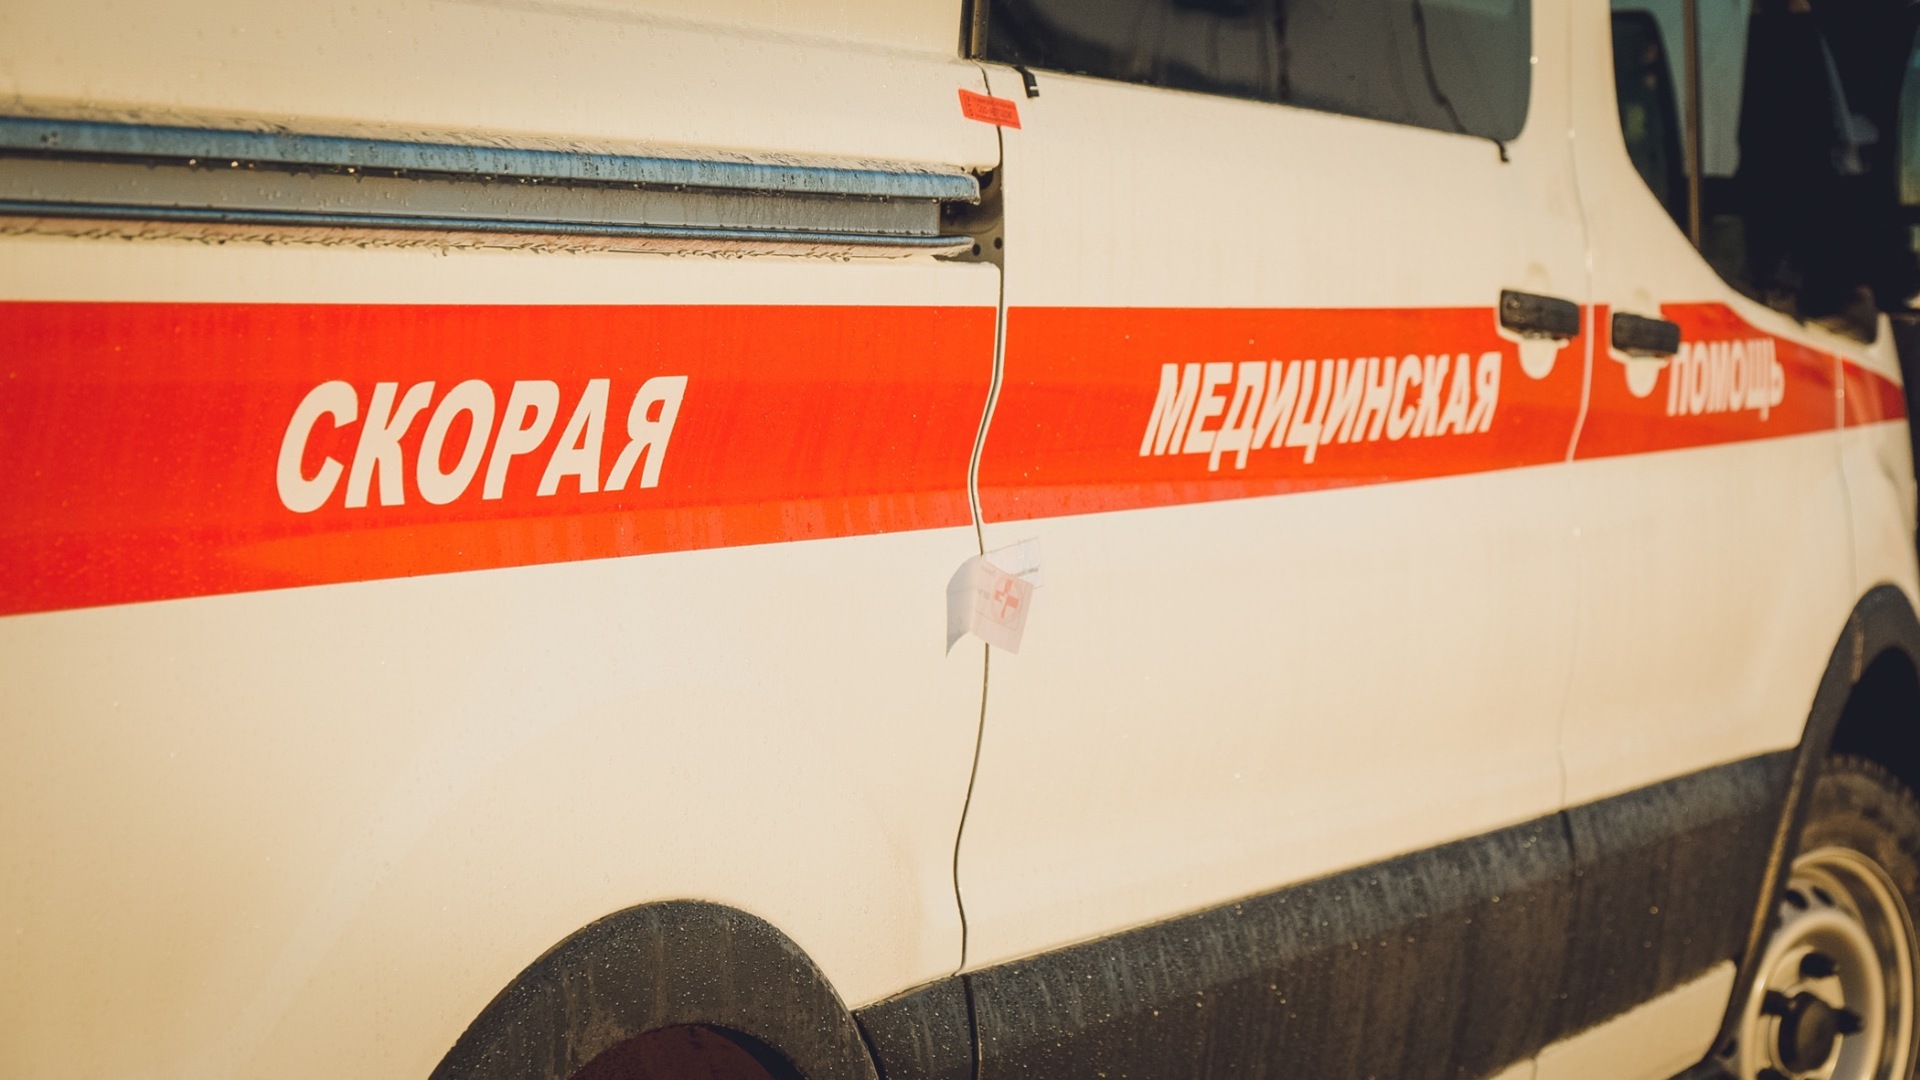 Мотоциклист с пассажиркой попали в страшное ДТП в Челябинске